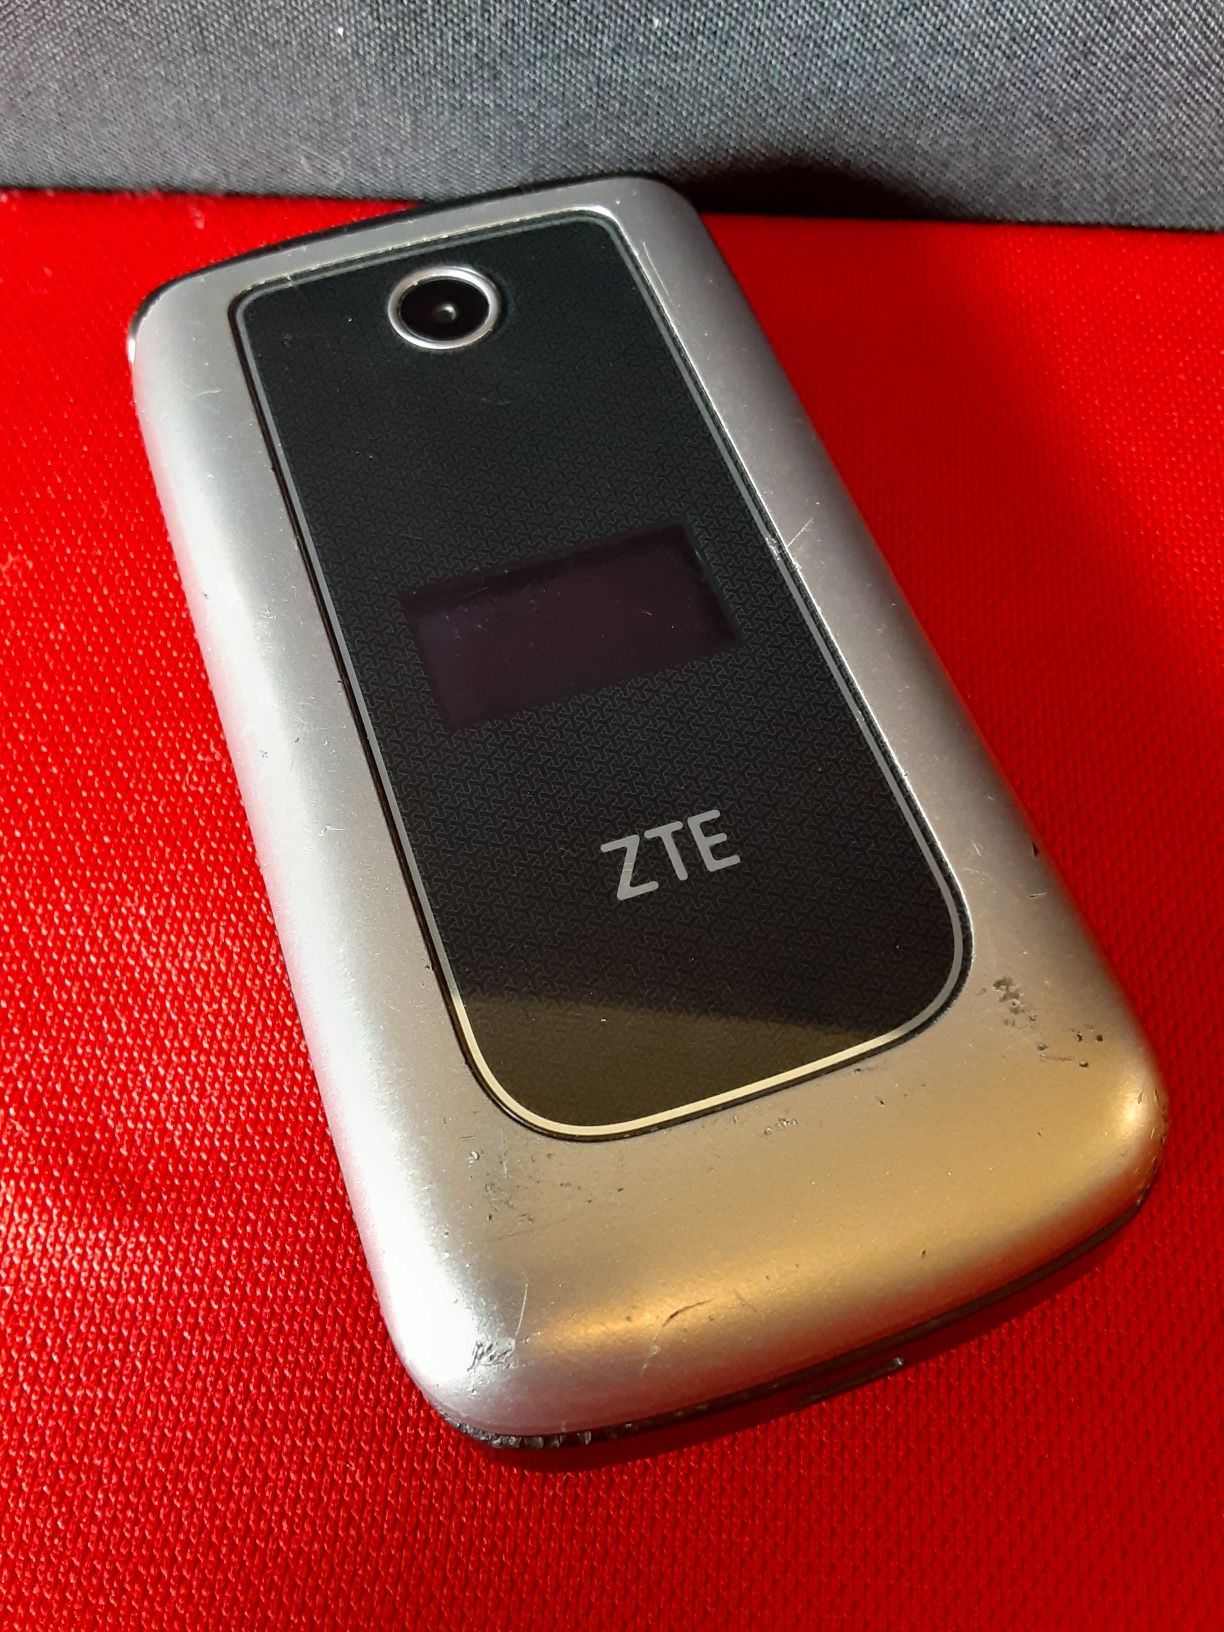 Verizon ZTE Z233V 4G LTE Basic Flip Phone